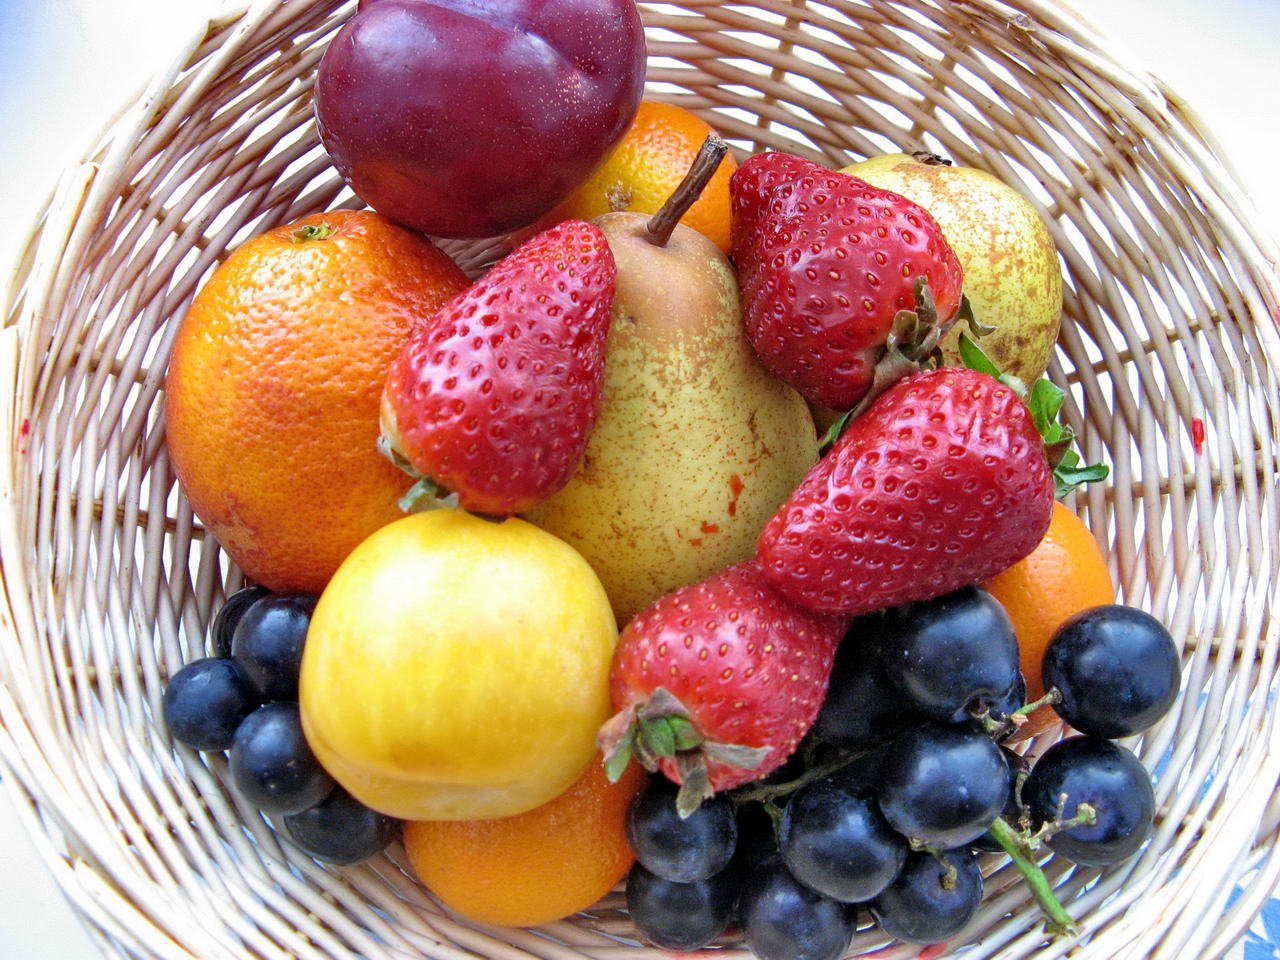 Описание вкуса фруктов. Фрукты и ягоды. Овощи и фрукты. Овощи, фрукты, ягоды. Фрукты фото.